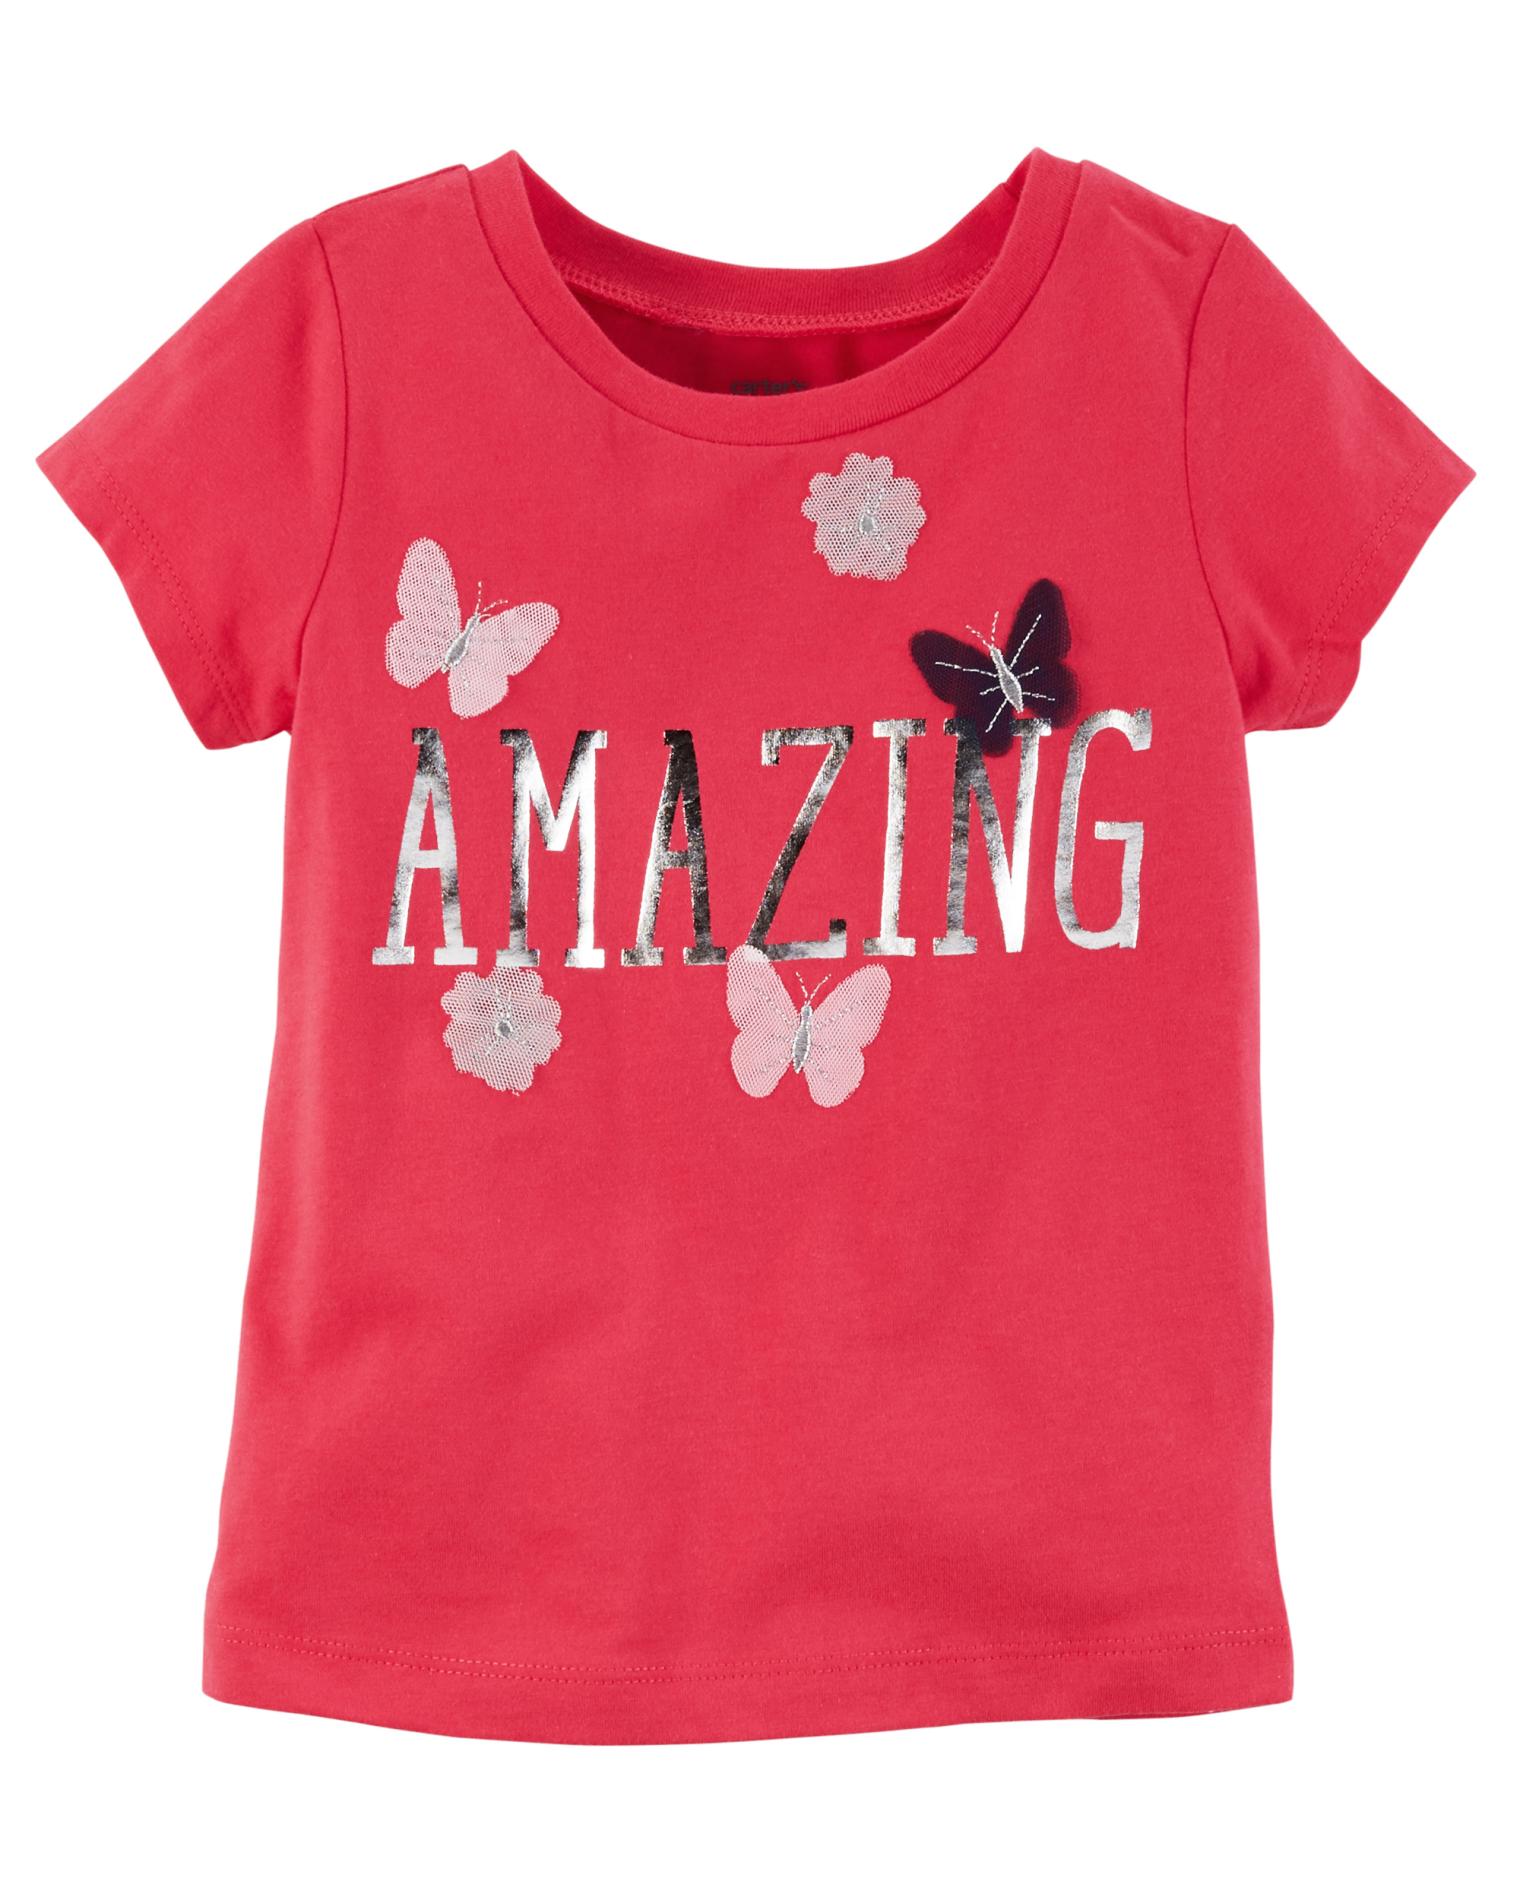 Carter's Girls' Short-Sleeve T-Shirt - Butterflies